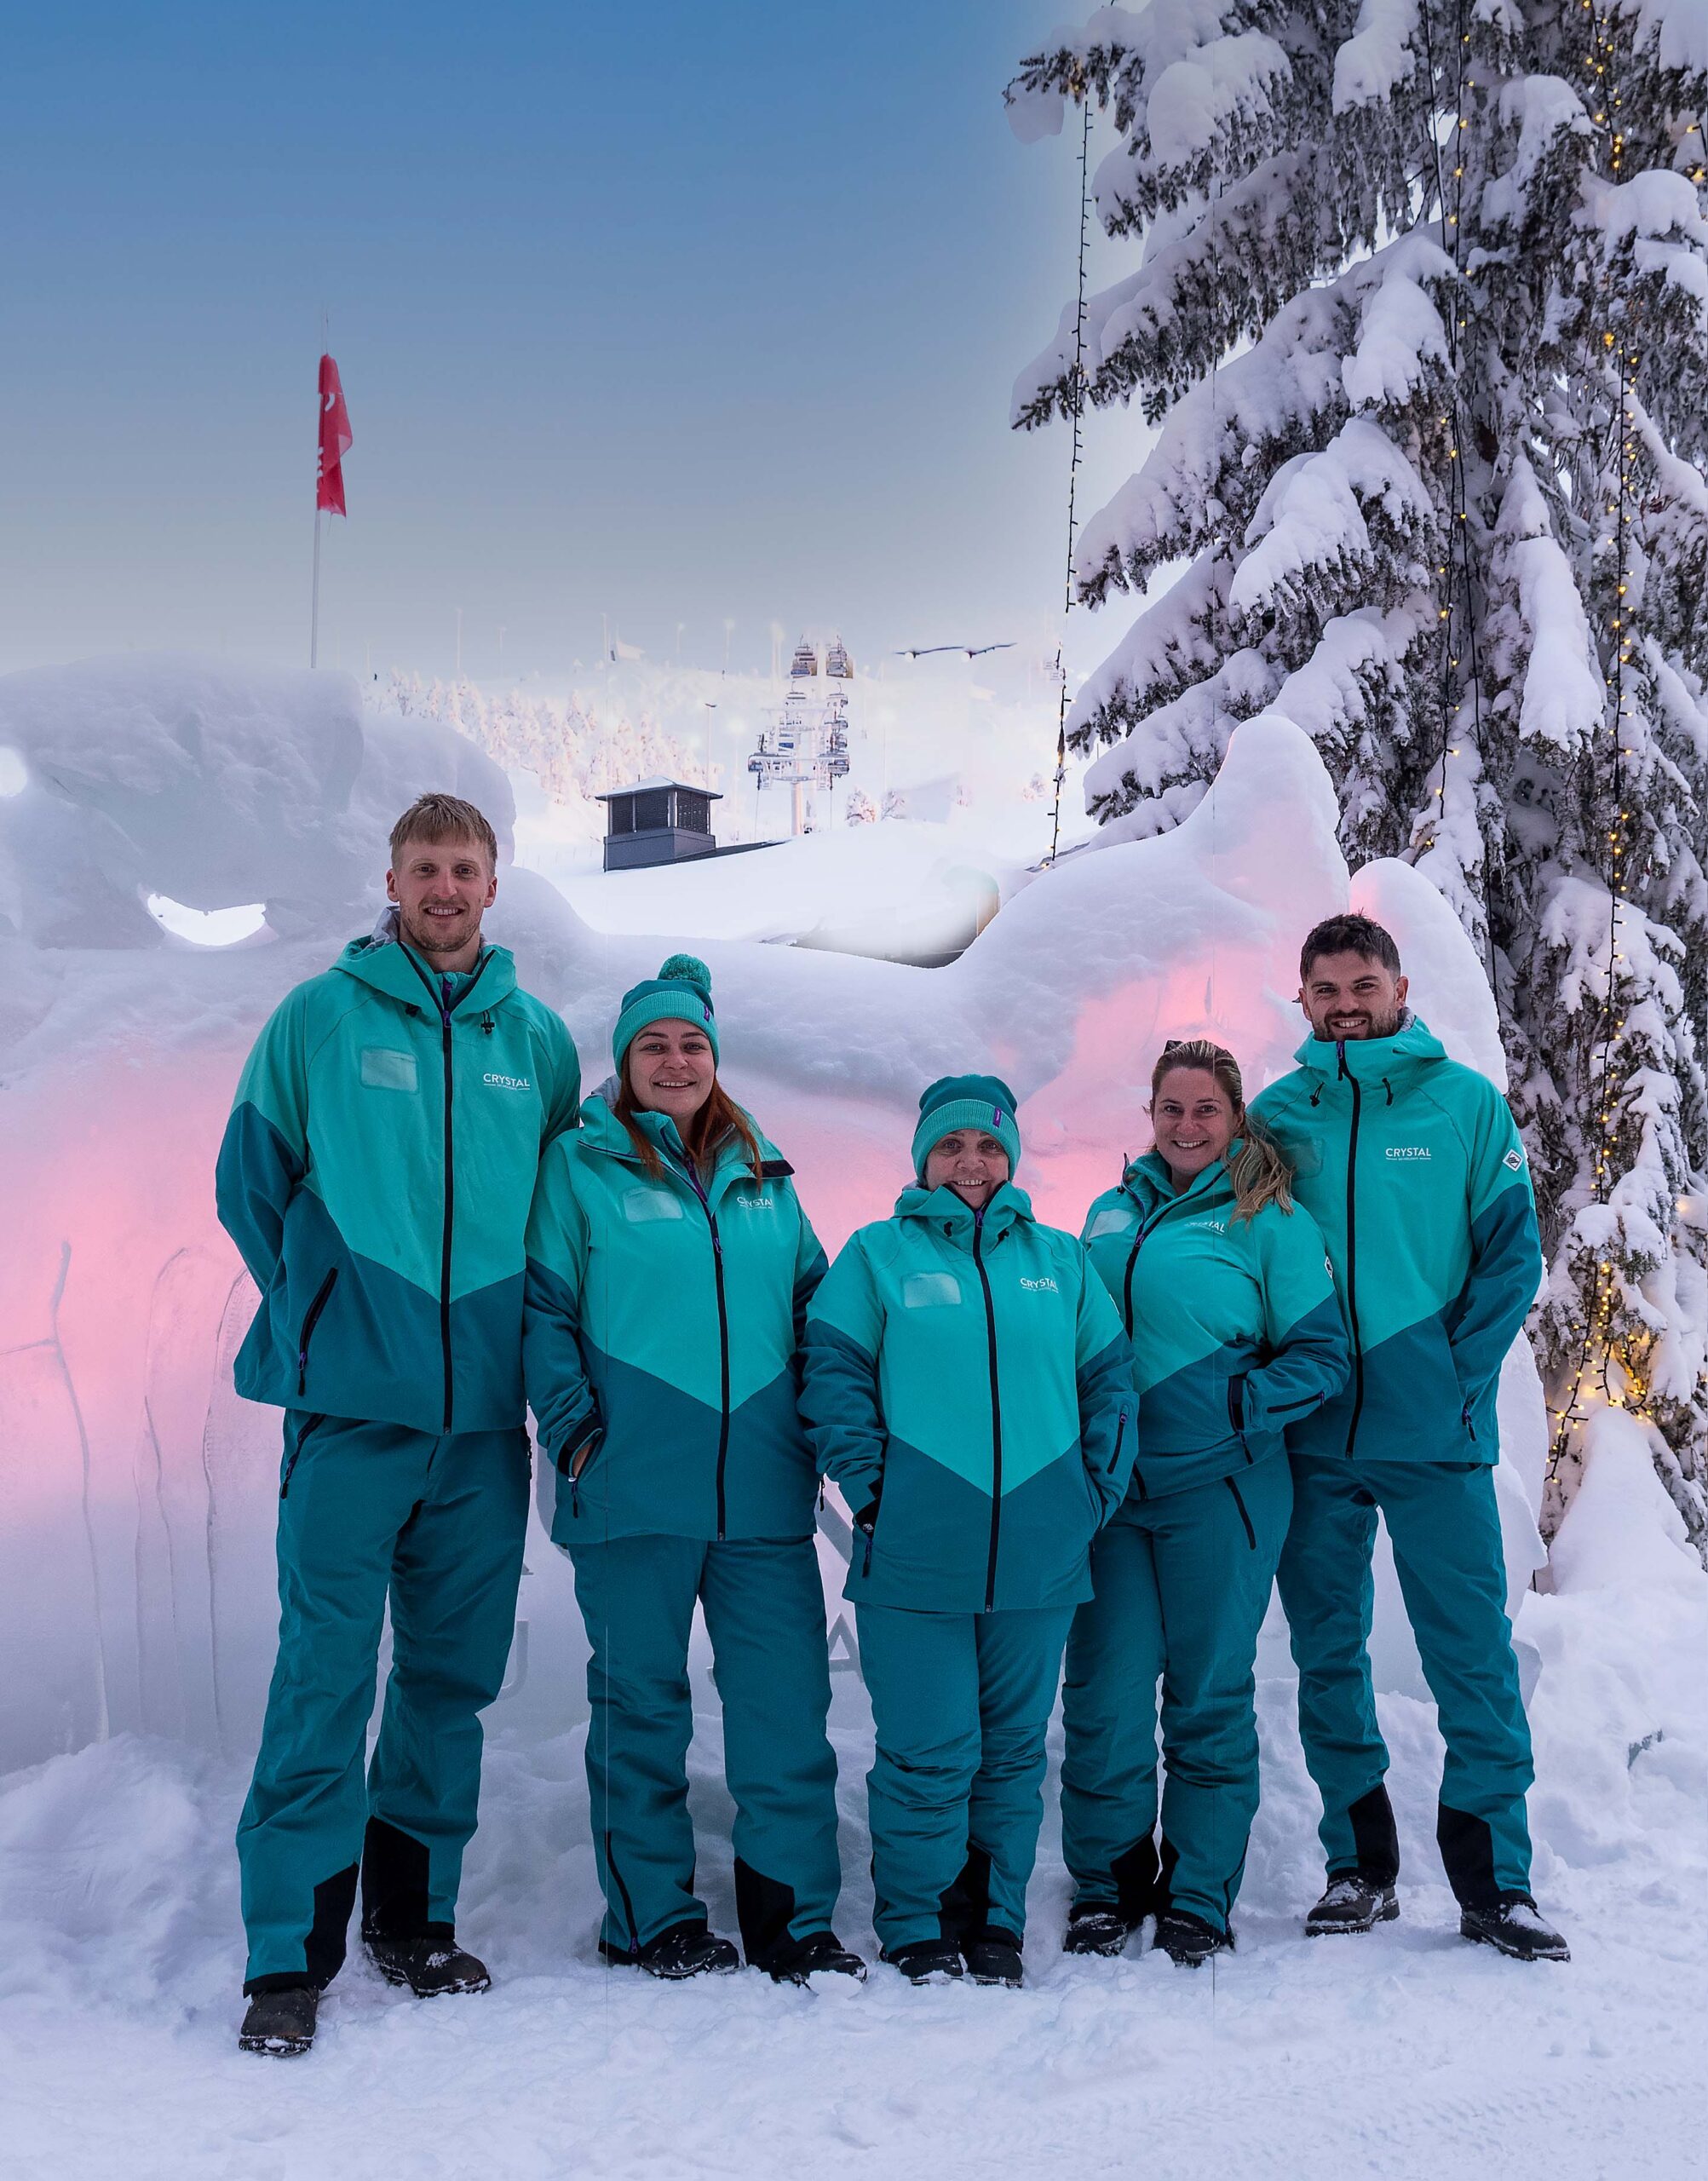 Ski Reiseleiter in Uniform in schneebedeckter, beleuchteter Landschaft